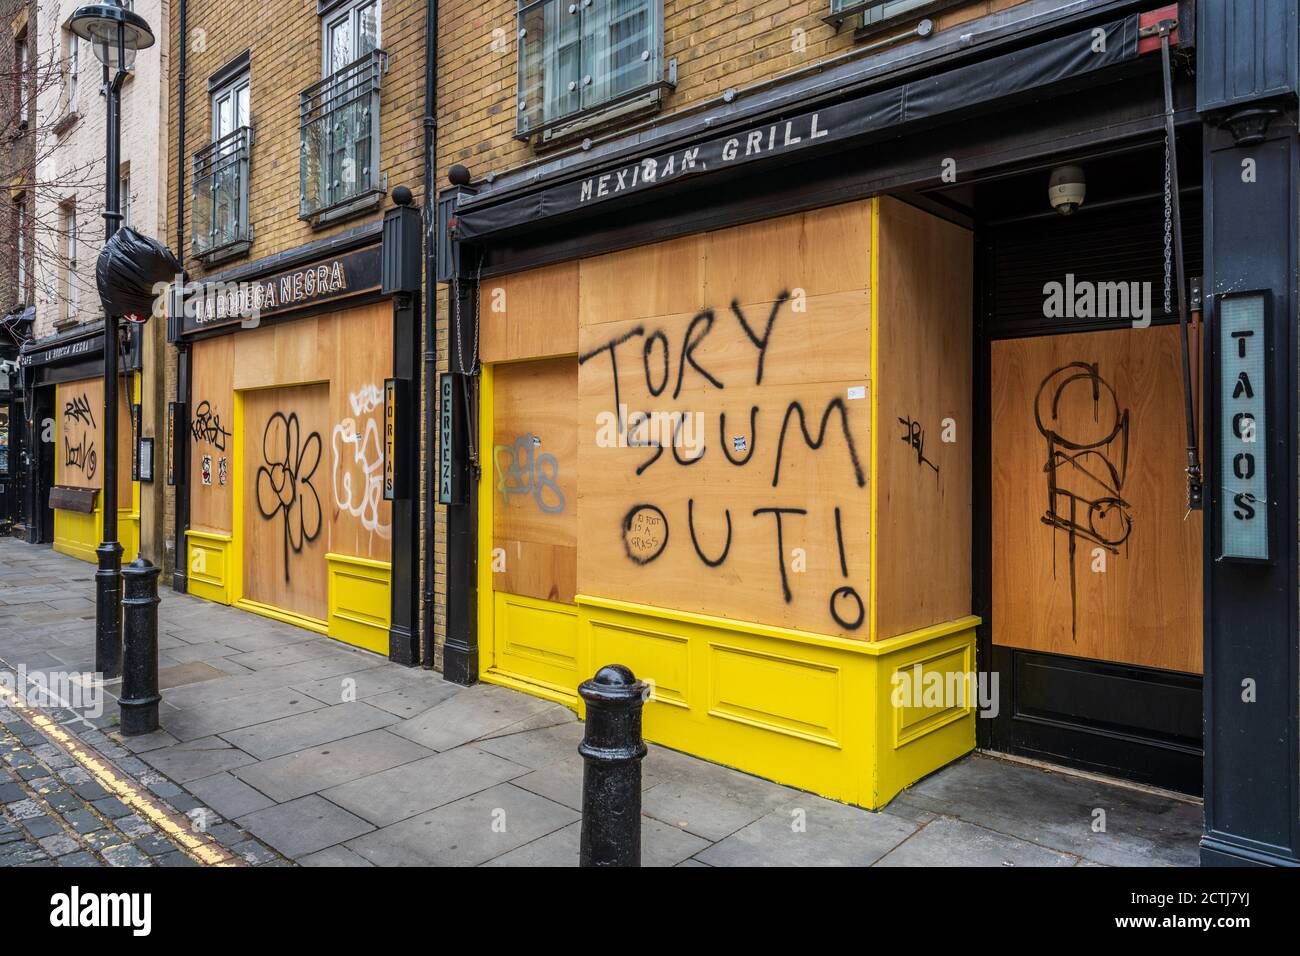 London Lockdown - während des Coronavirus Pandemic Lockdown wurden Restaurants im Londoner Stadtteil Soho eingestiegen - Anti-Regierung-Graffiti auf Hortfehden. Stockfoto